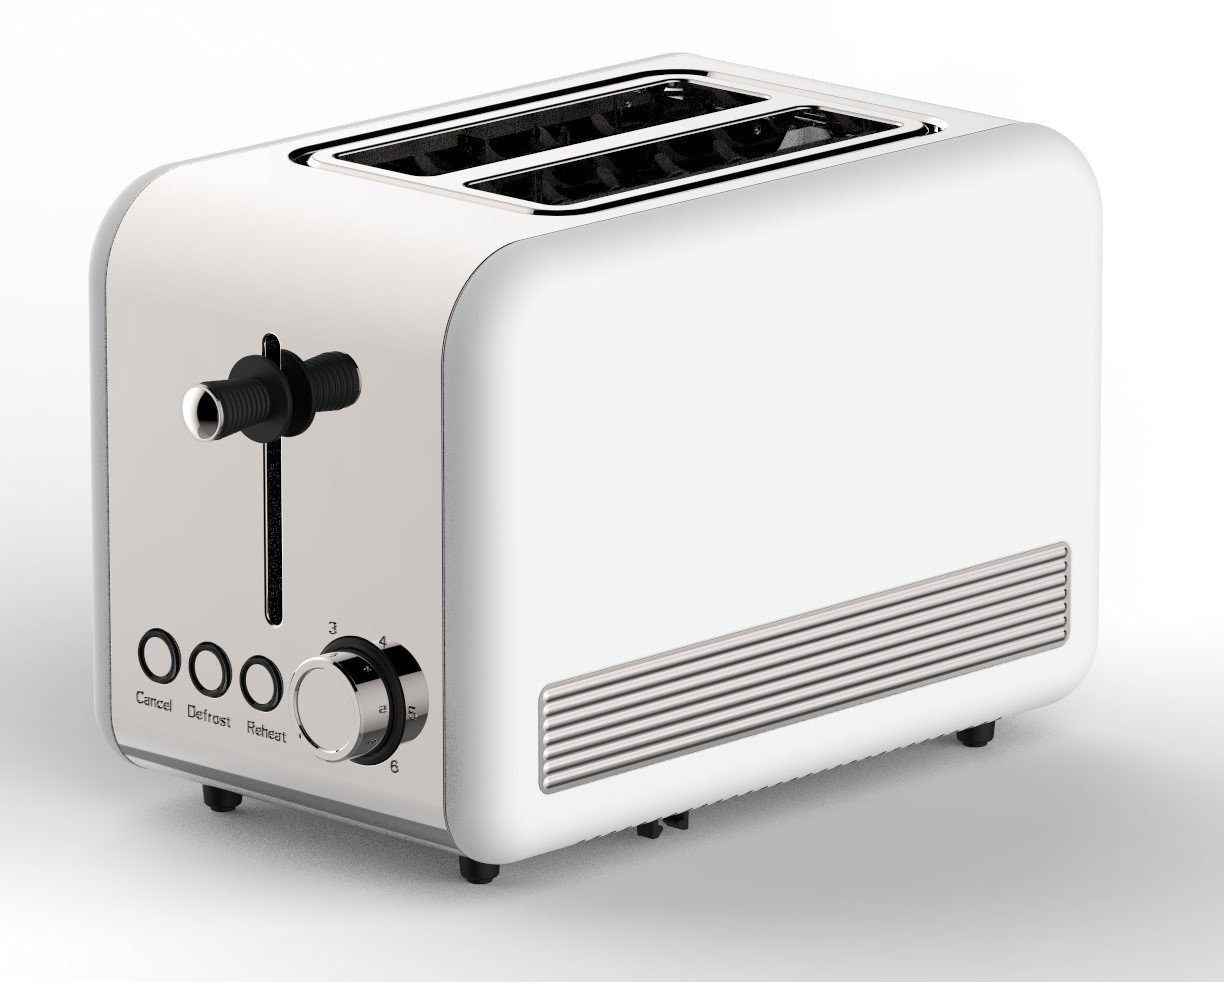 Toastautomat Watt Retro Weiß/Silber 850 COFI 1453 2-ScheibenToaster Toaster